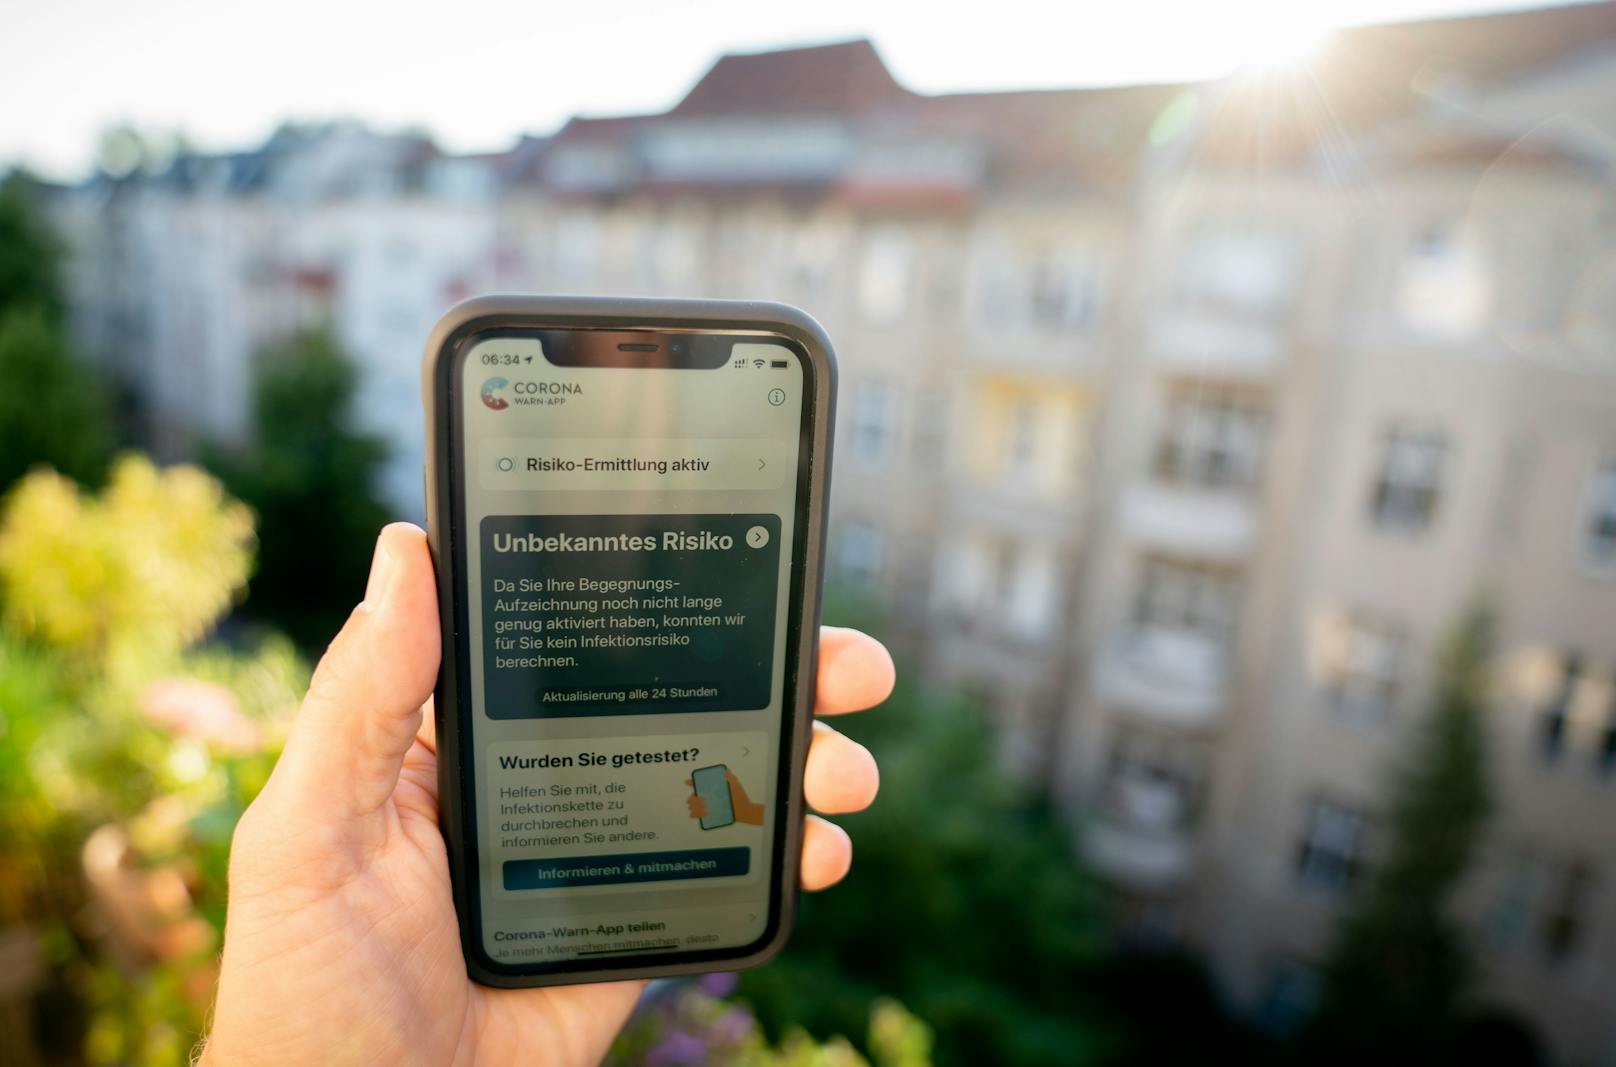 Auch in Deutschland gibt es jetzt eine Corona-Warn-App, ähnlich wie die des Österreichischen Roten Kreuzes. Die beiden Apps sind jedoch nicht kompatibel.